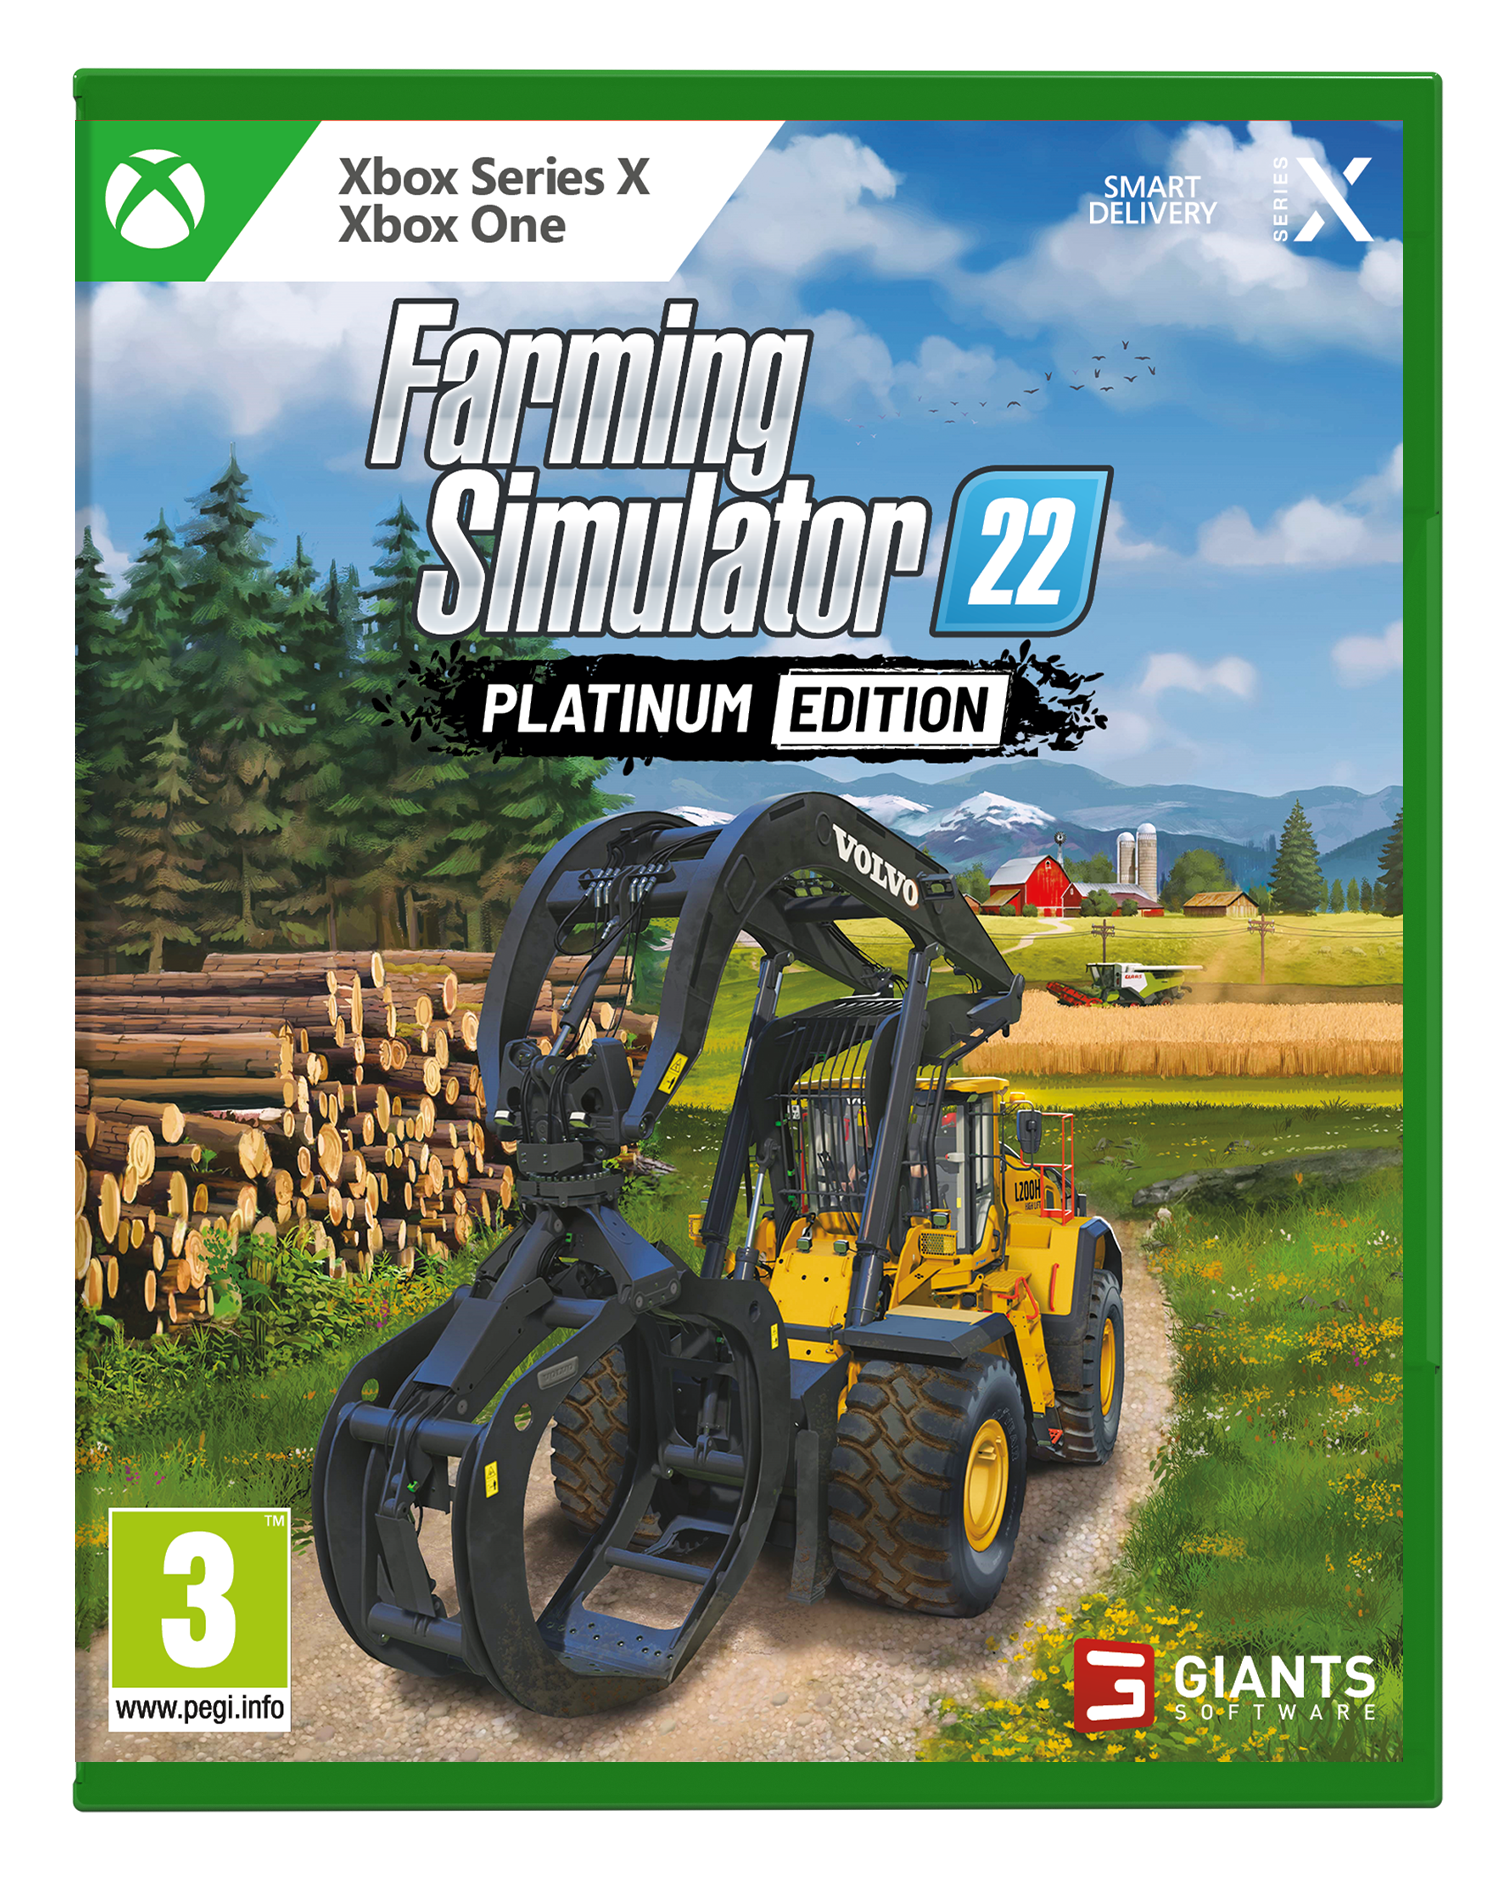 Landwirtschafts-Simulator 22 (Platinum Edition) – Xbox Series X